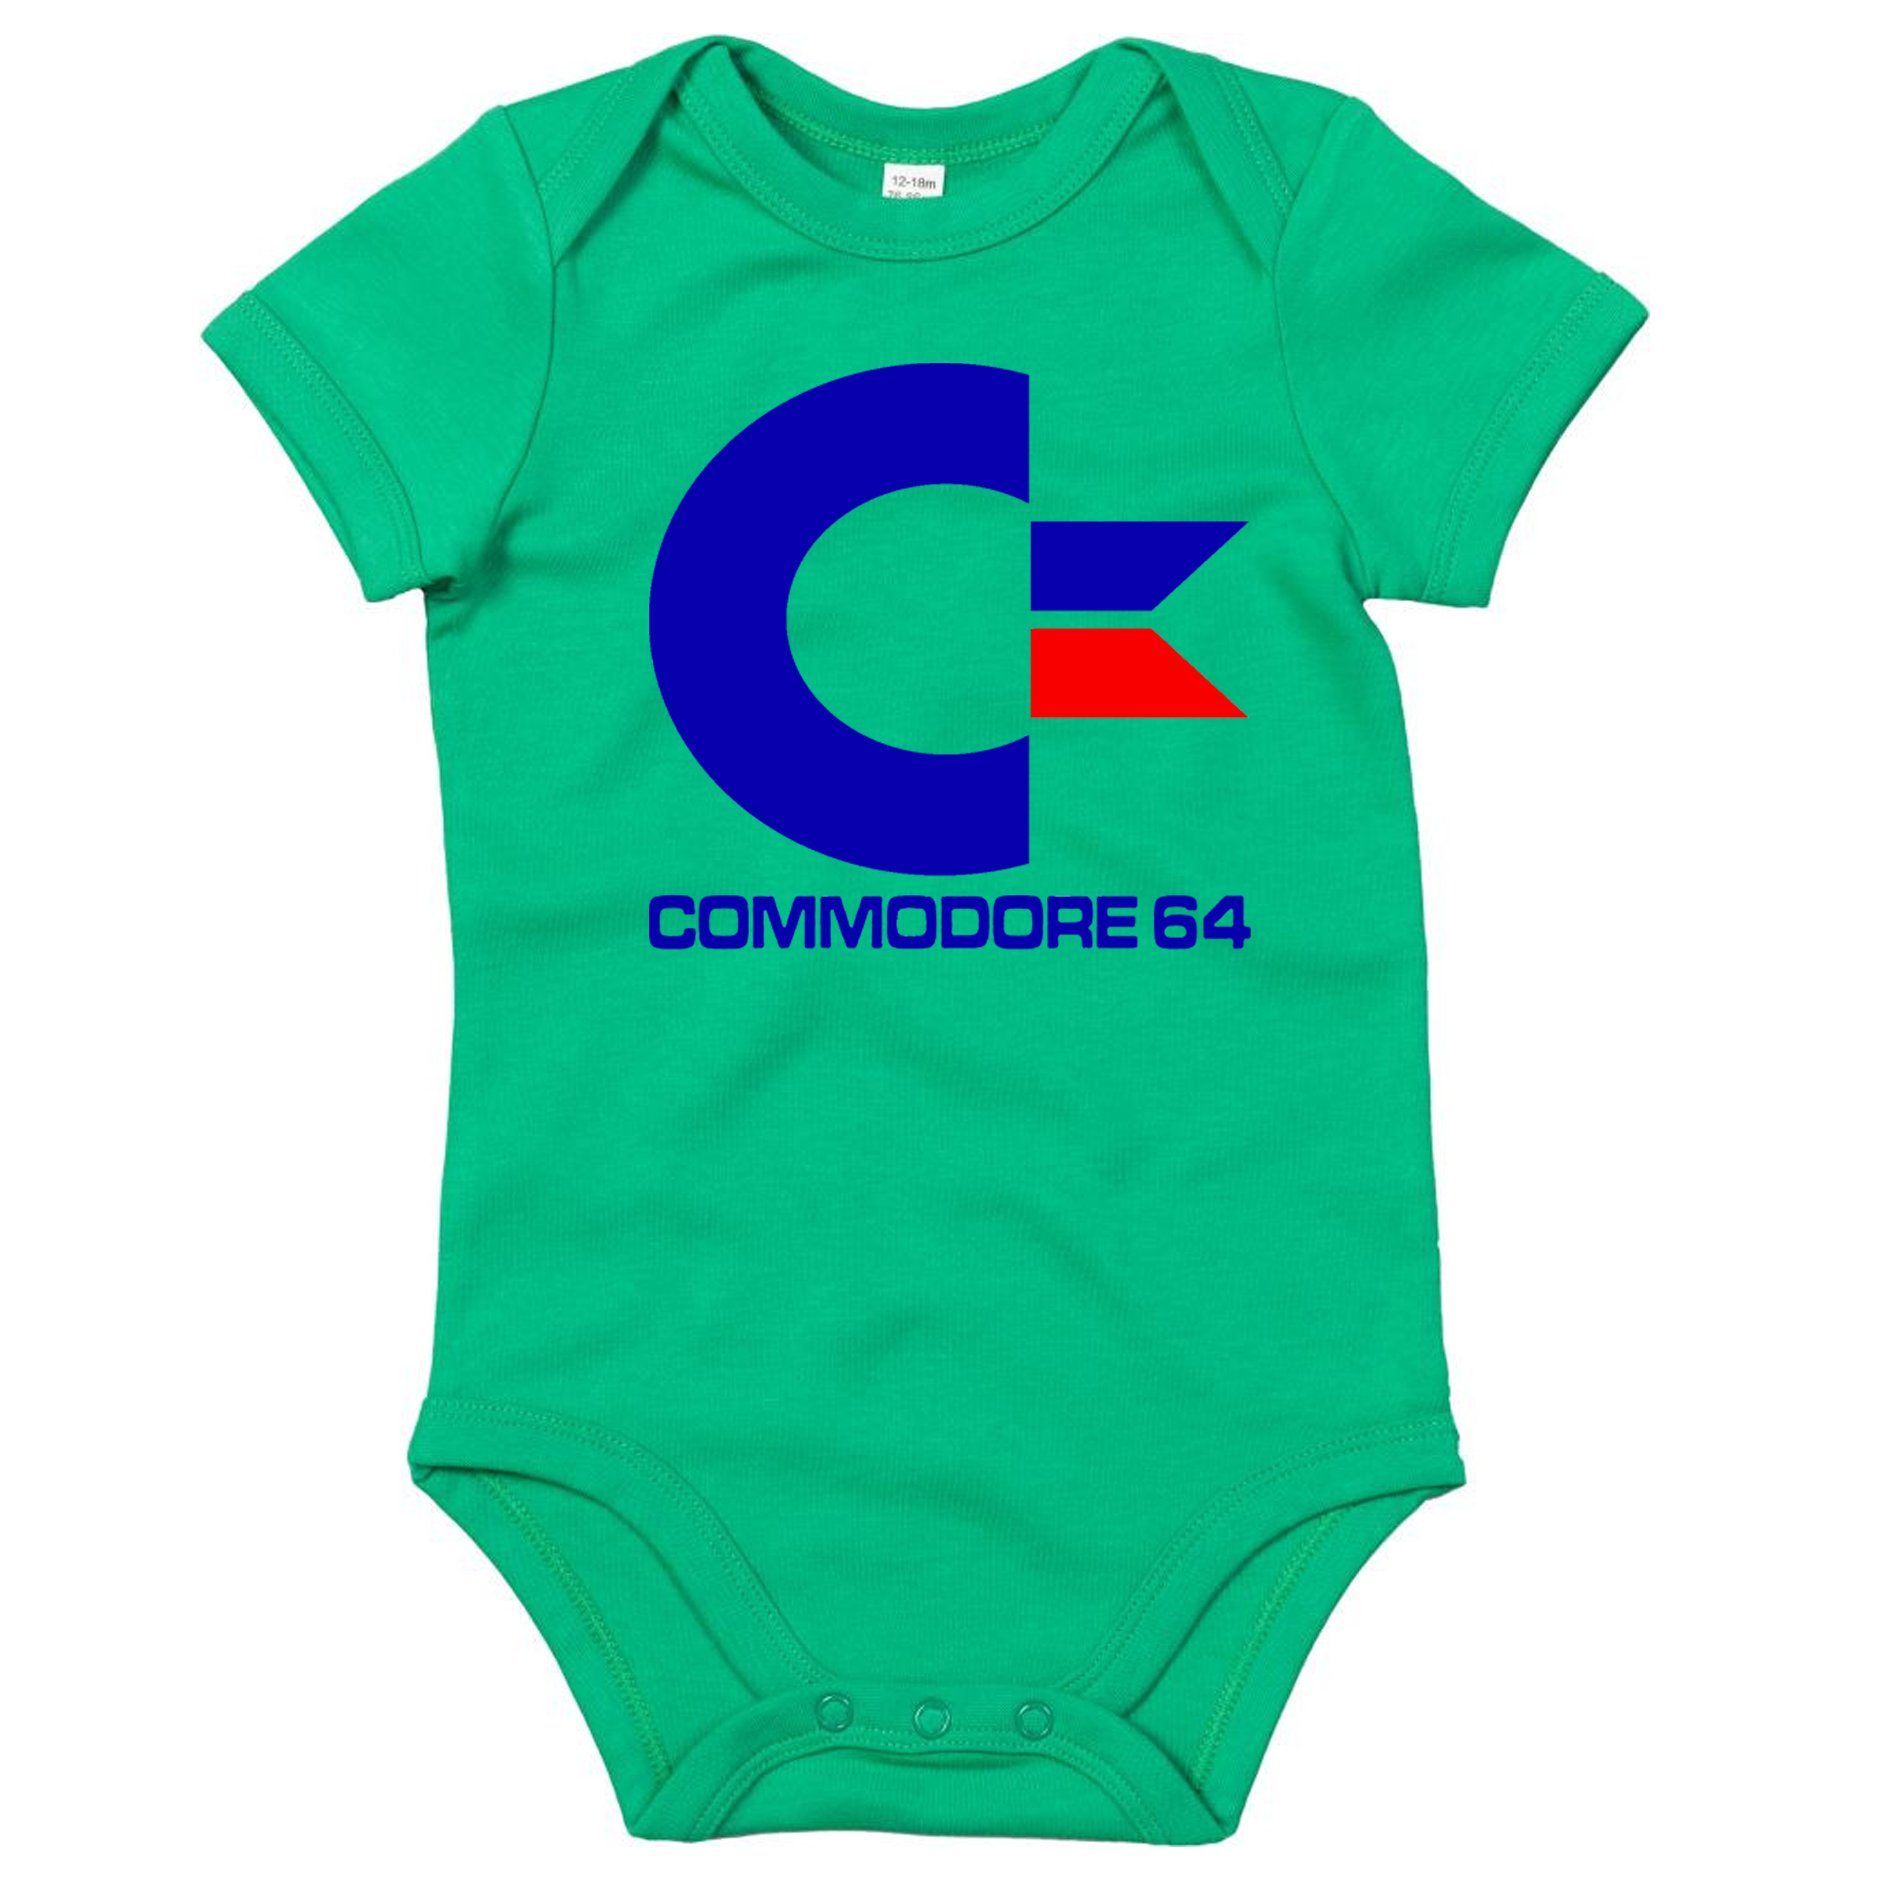 Blondie & Strampler Kinder Grün Brownie Amige Commodore Nintendo Baby 64 Konsole